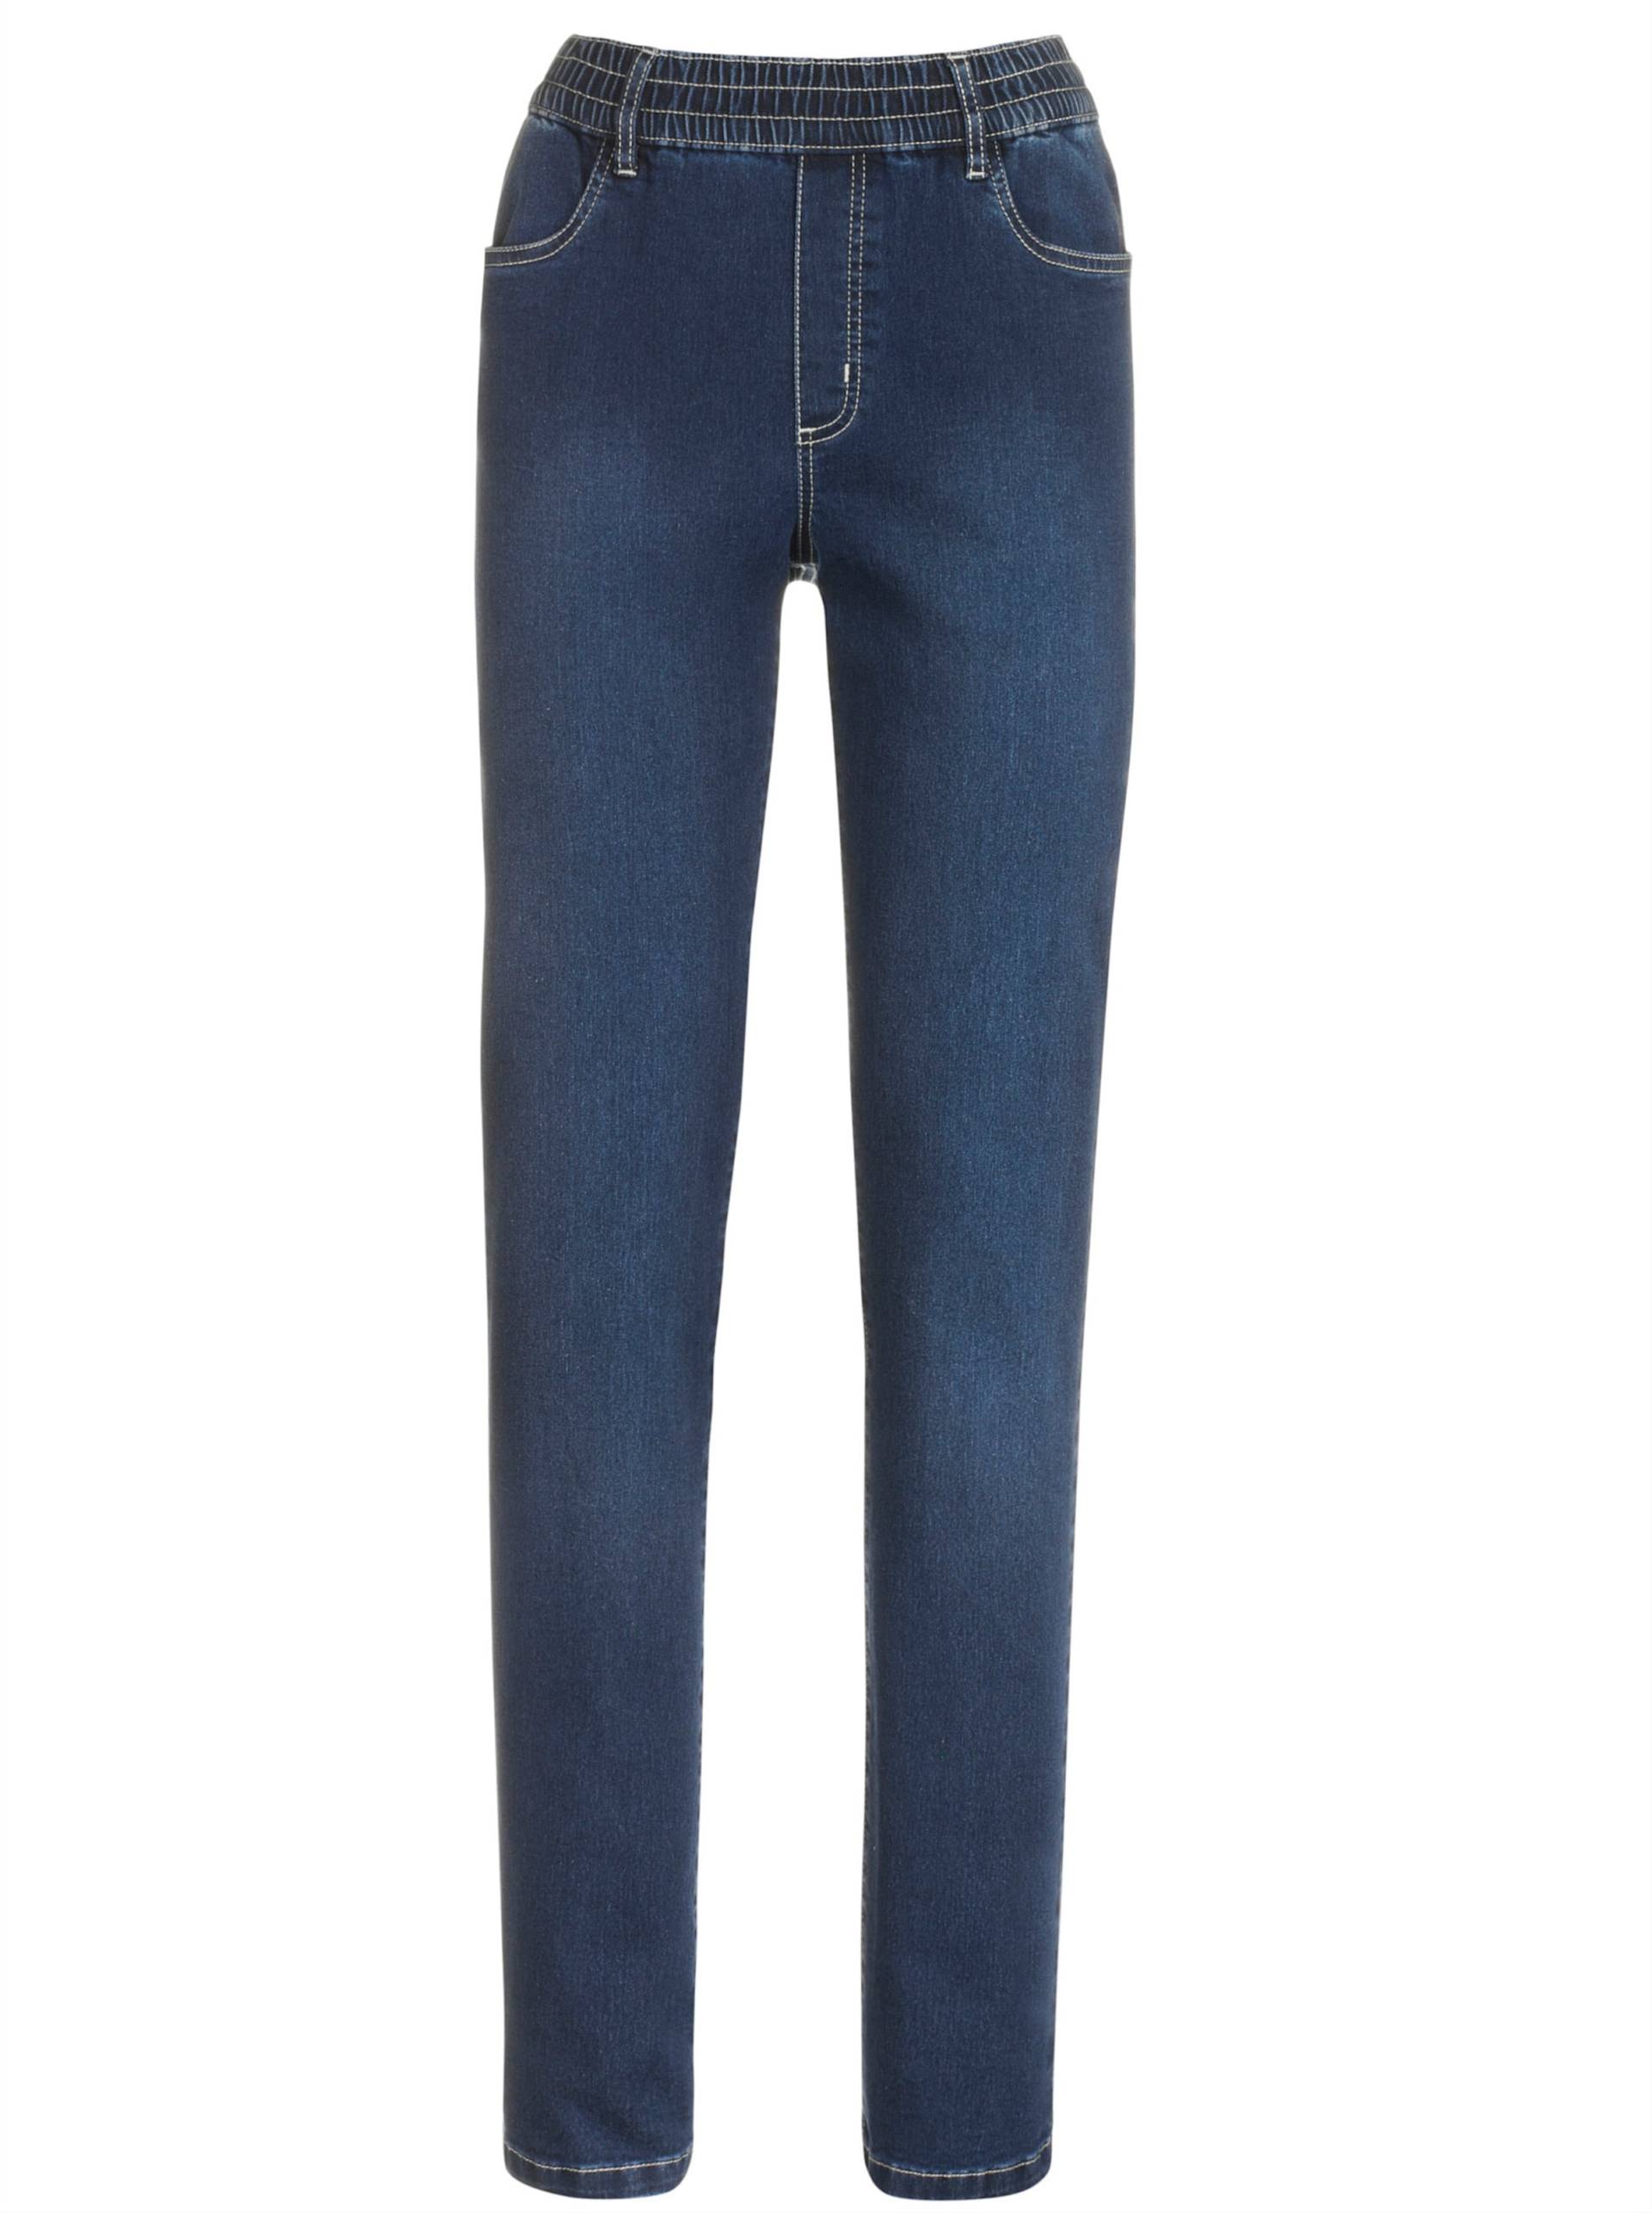 High-waist-Jeans in blue-stone-washed von heine